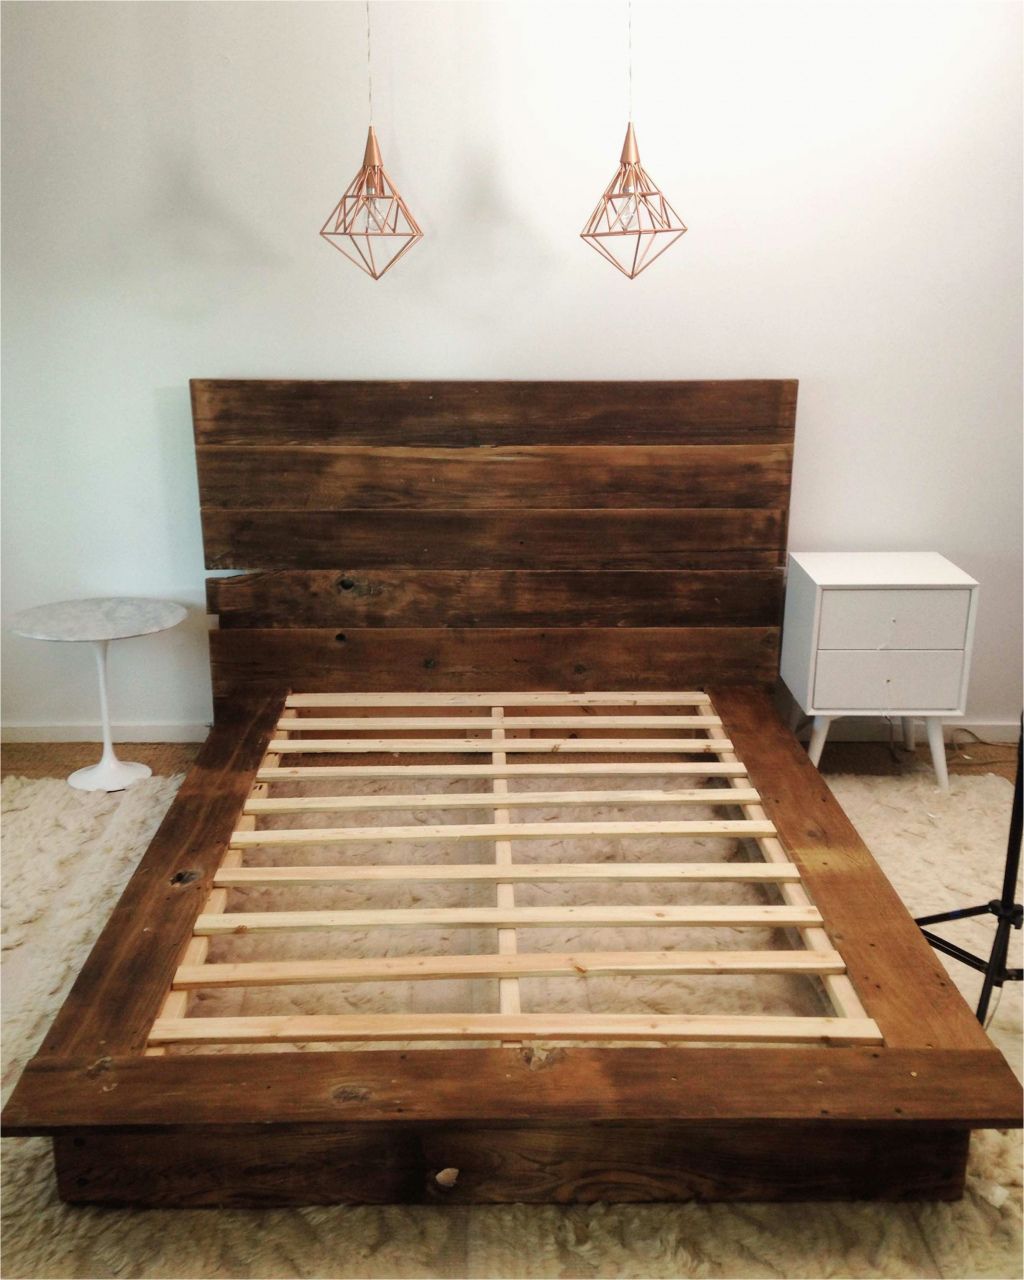 6 Unique Bed Frame Diy Wood Ideas -   diy Bed Frame decor